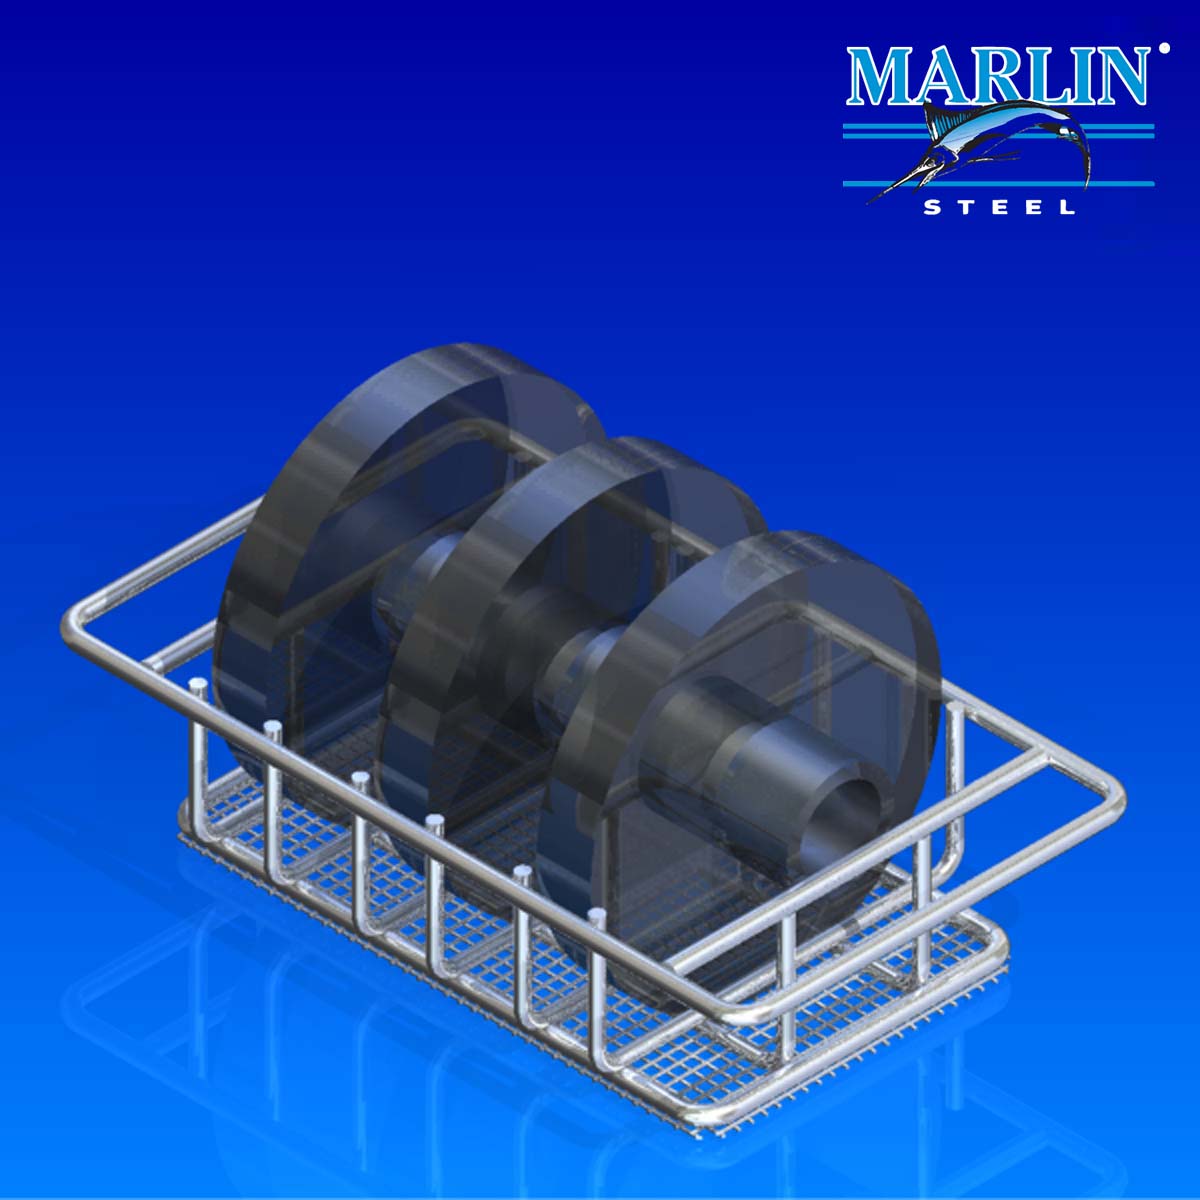 Marlin Steel Material Handling Basket 599021